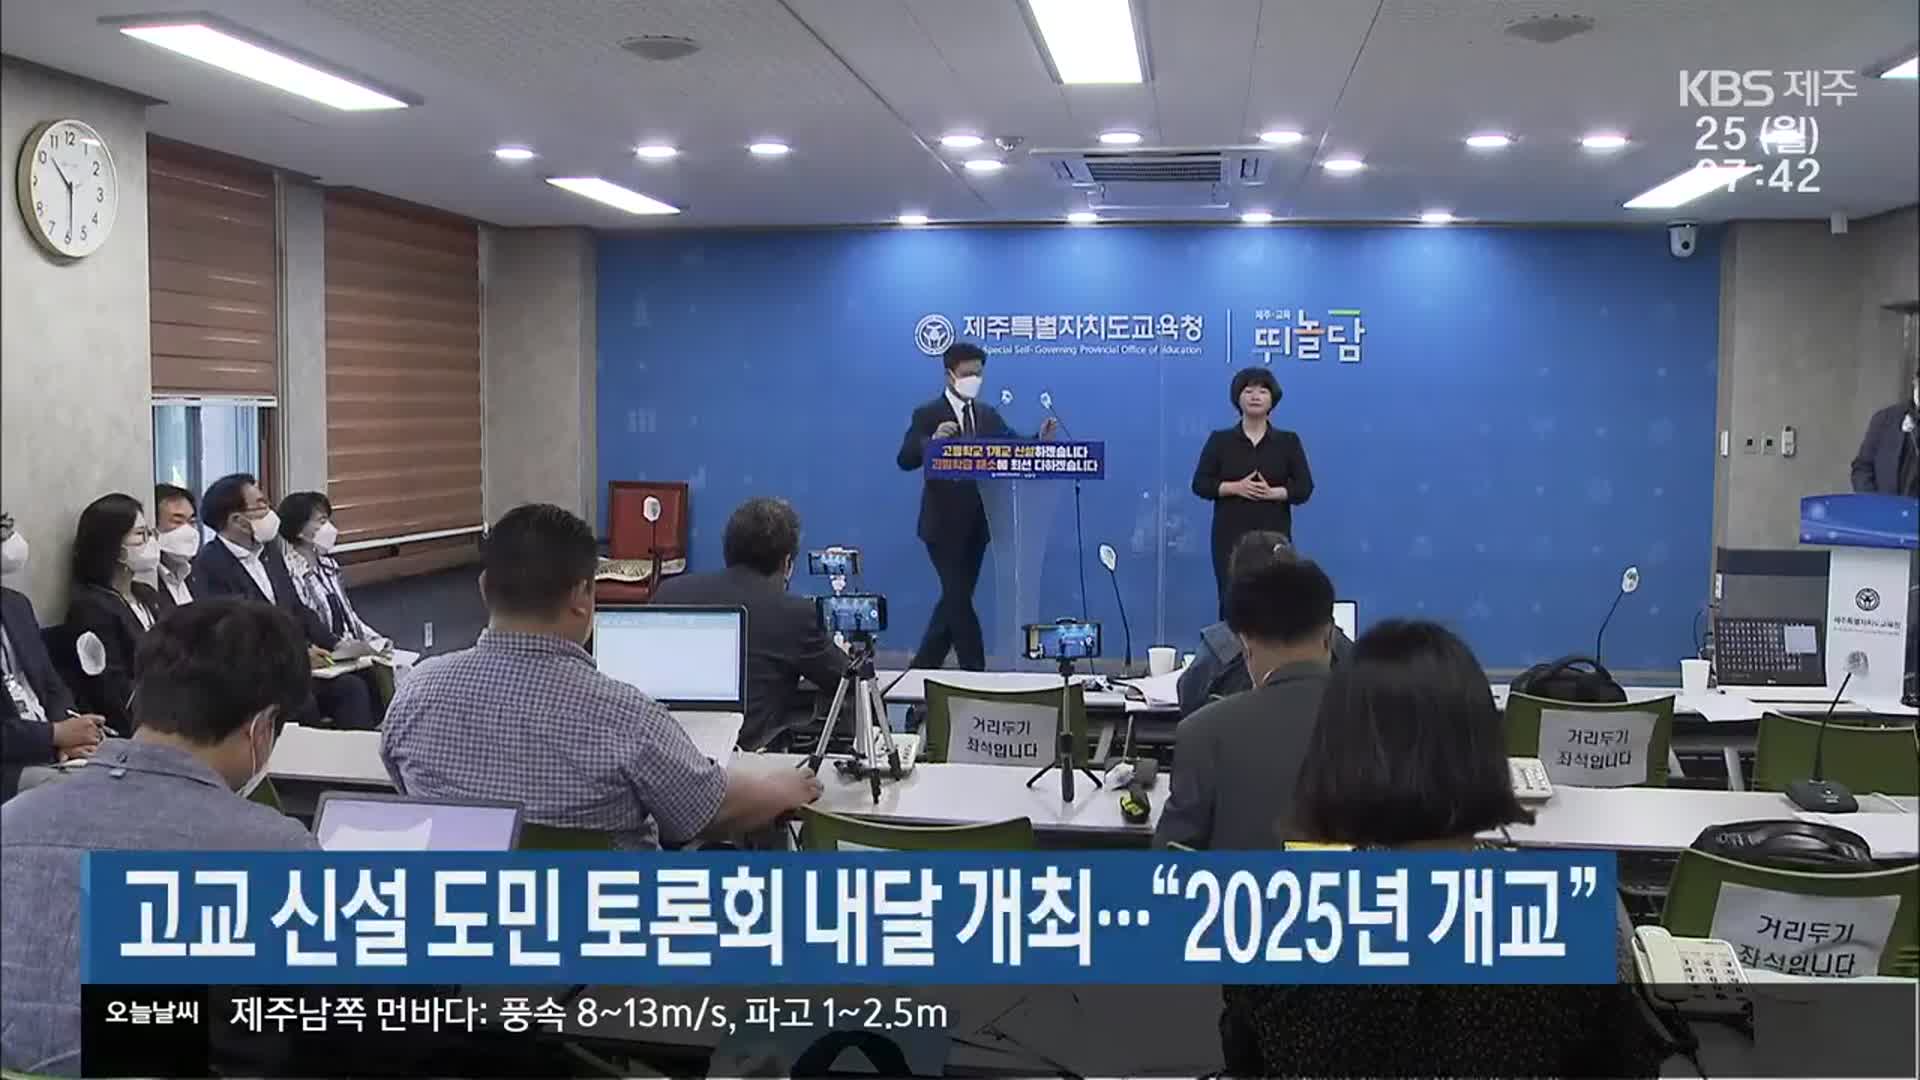 고교 신설 제주도민 토론회 내달 개최…“2025년 개교”